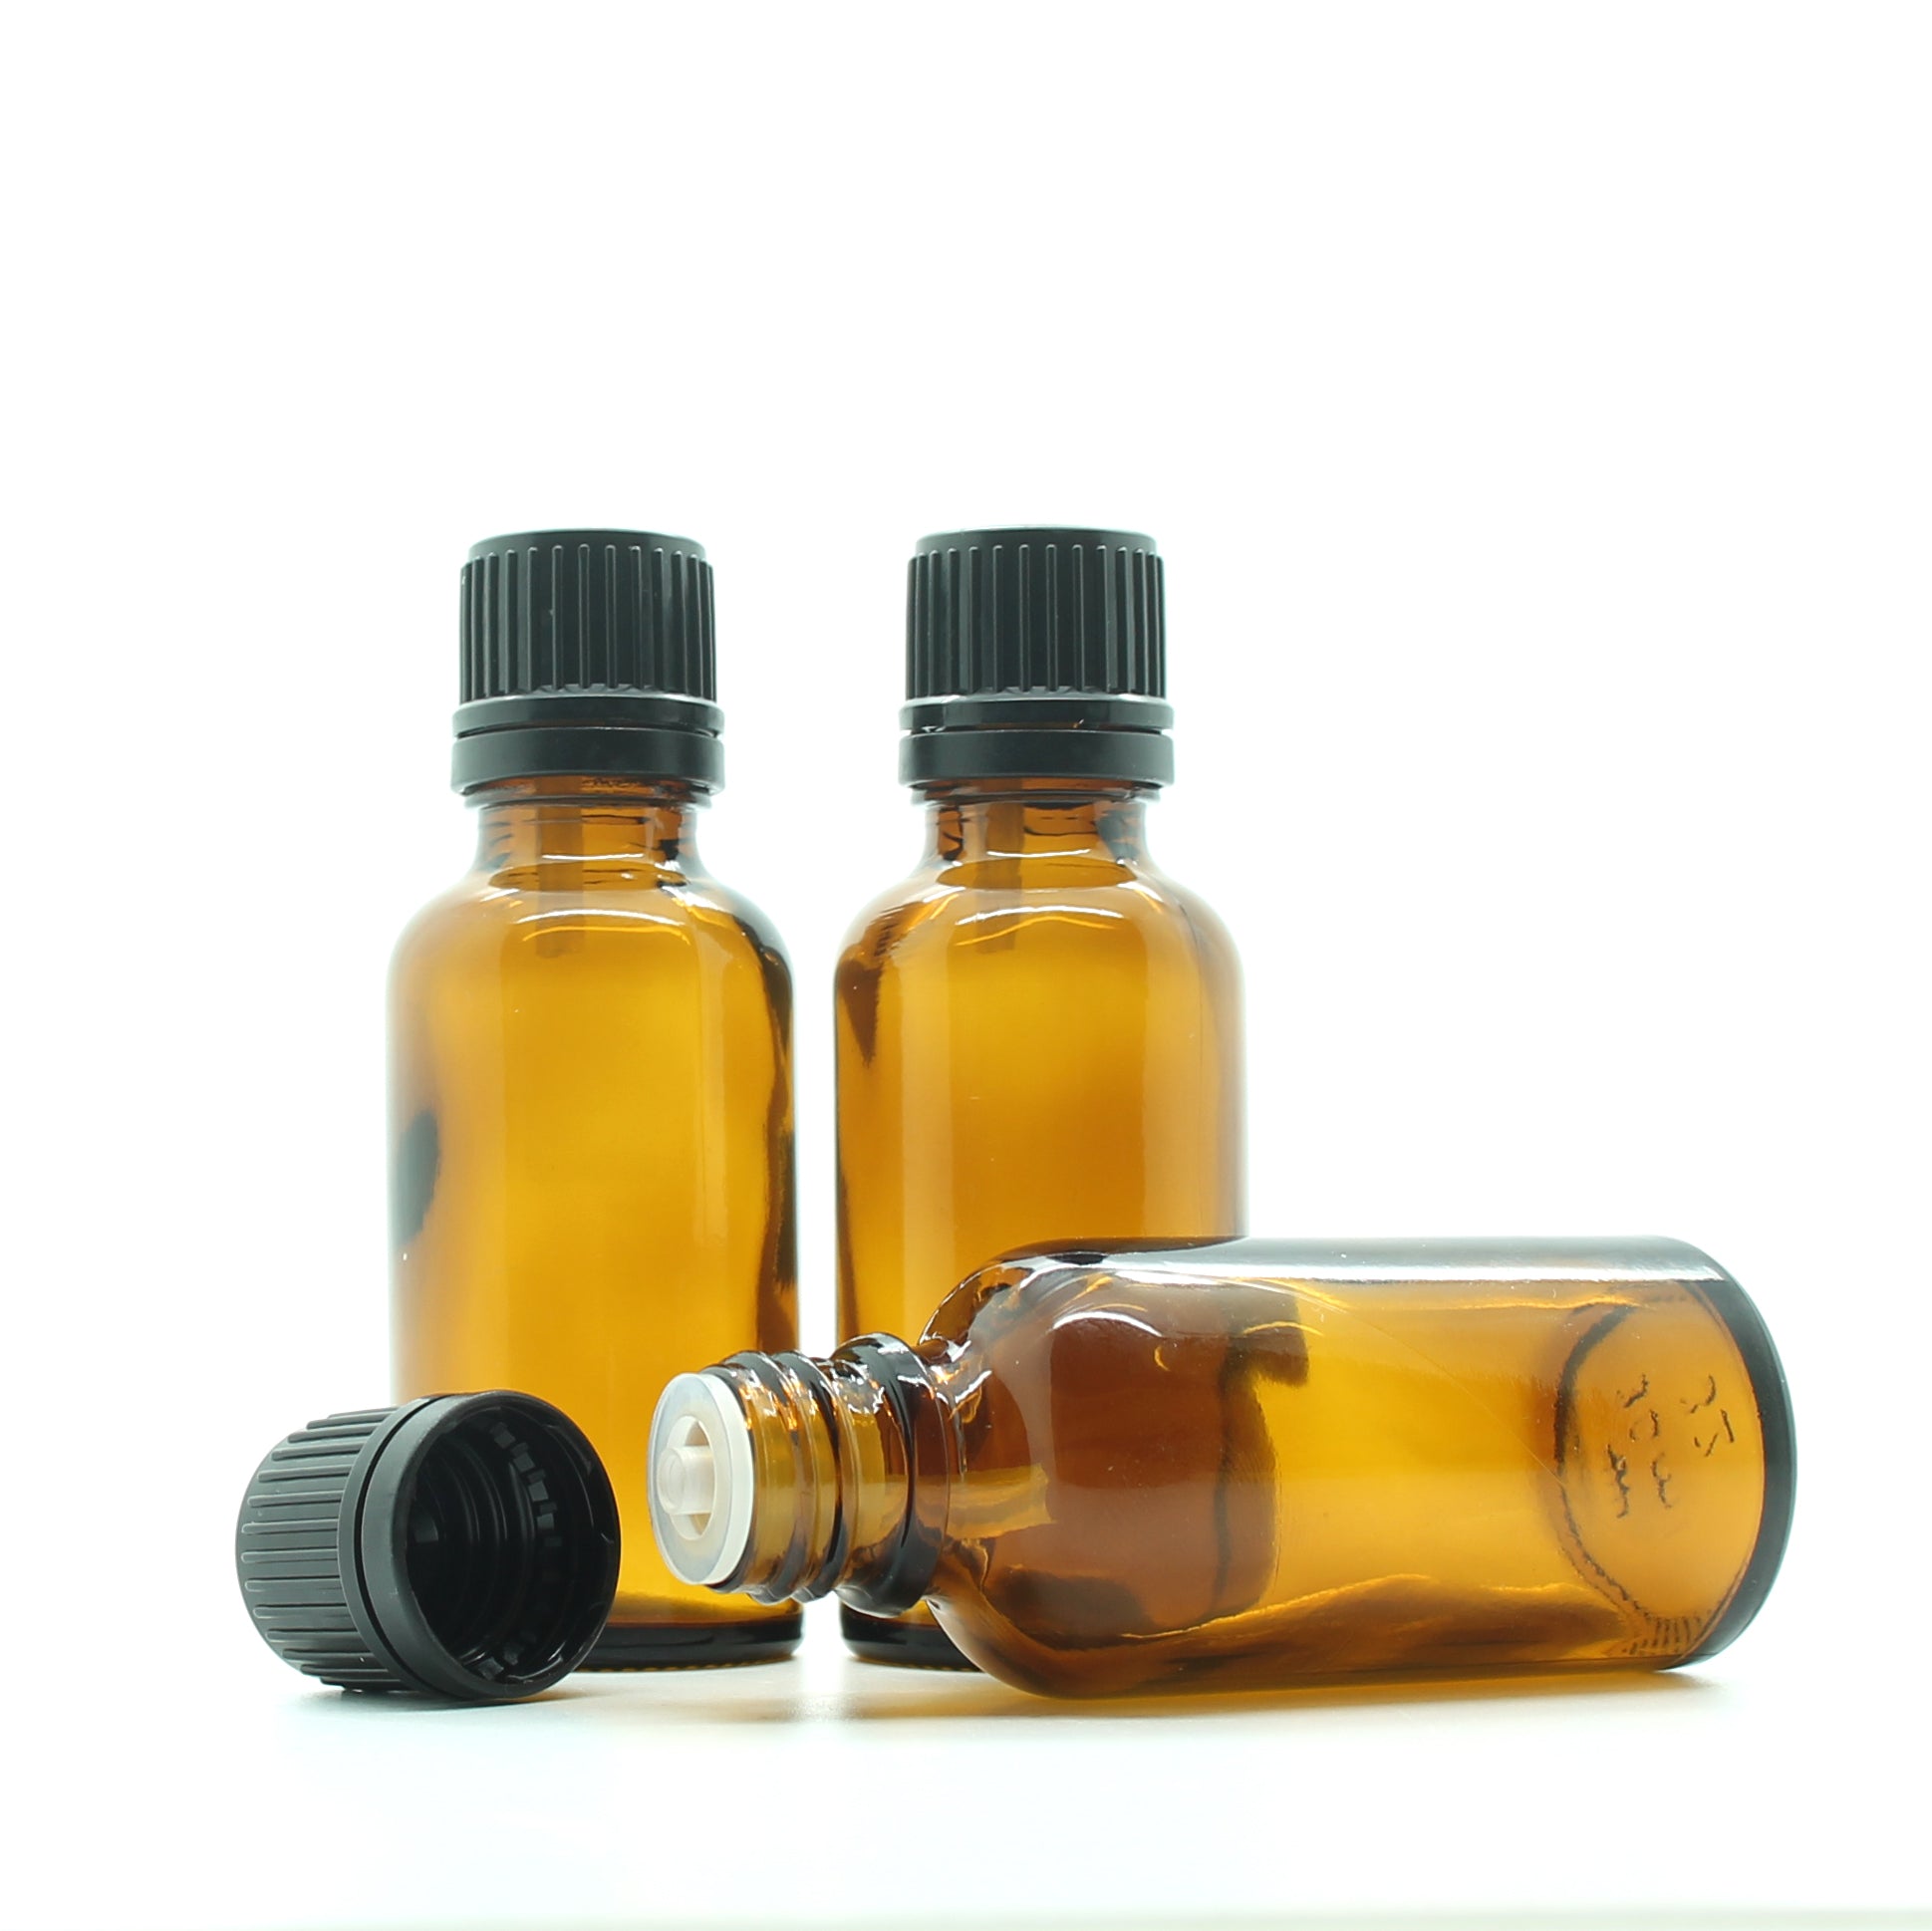 30ml Amber Moulded Glass Pourer Restrictor Bottle with Tamper Evident Cap